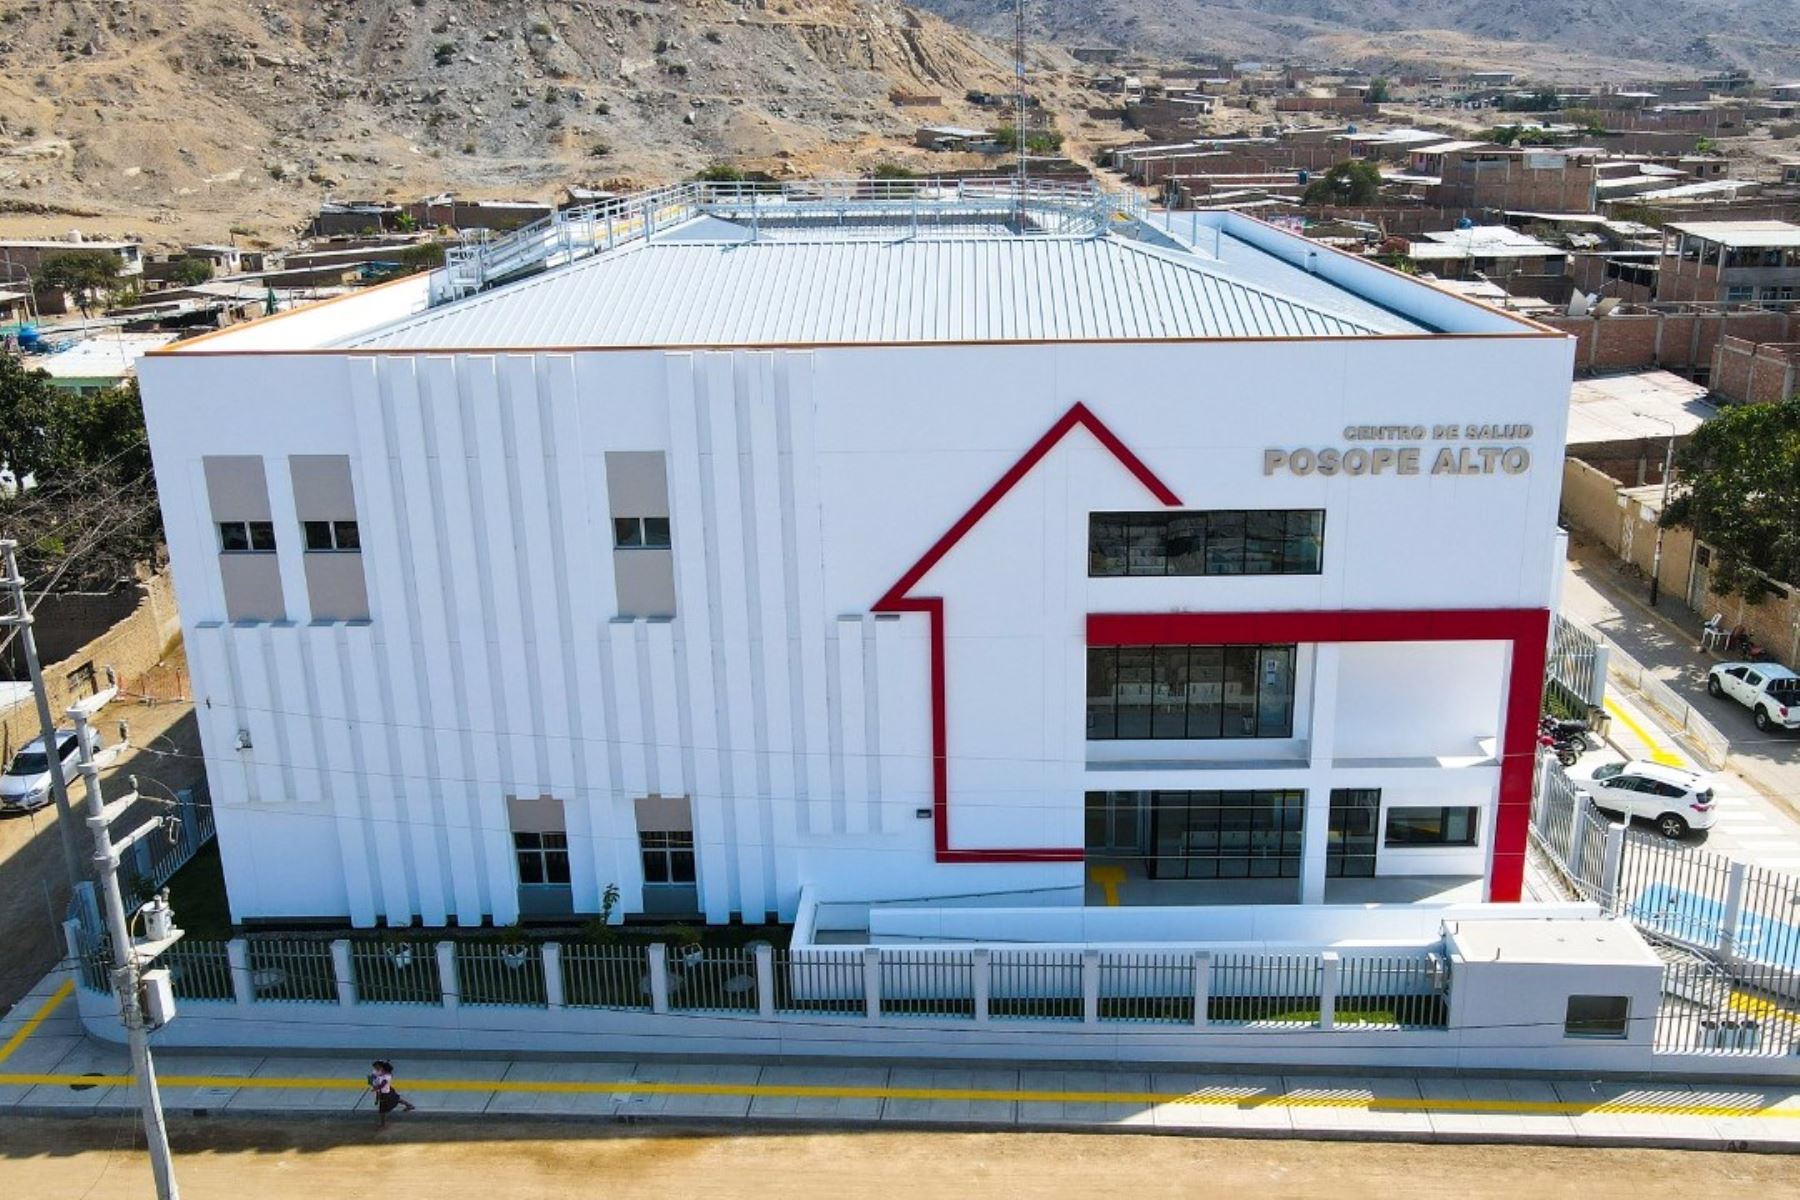 Centro de salud de Pósope Alto, ubicado en el distrito de Pátapo (Chiclayo) será inaugurado el jueves 17 de noviembre. Foto: ARCC/Difusión.